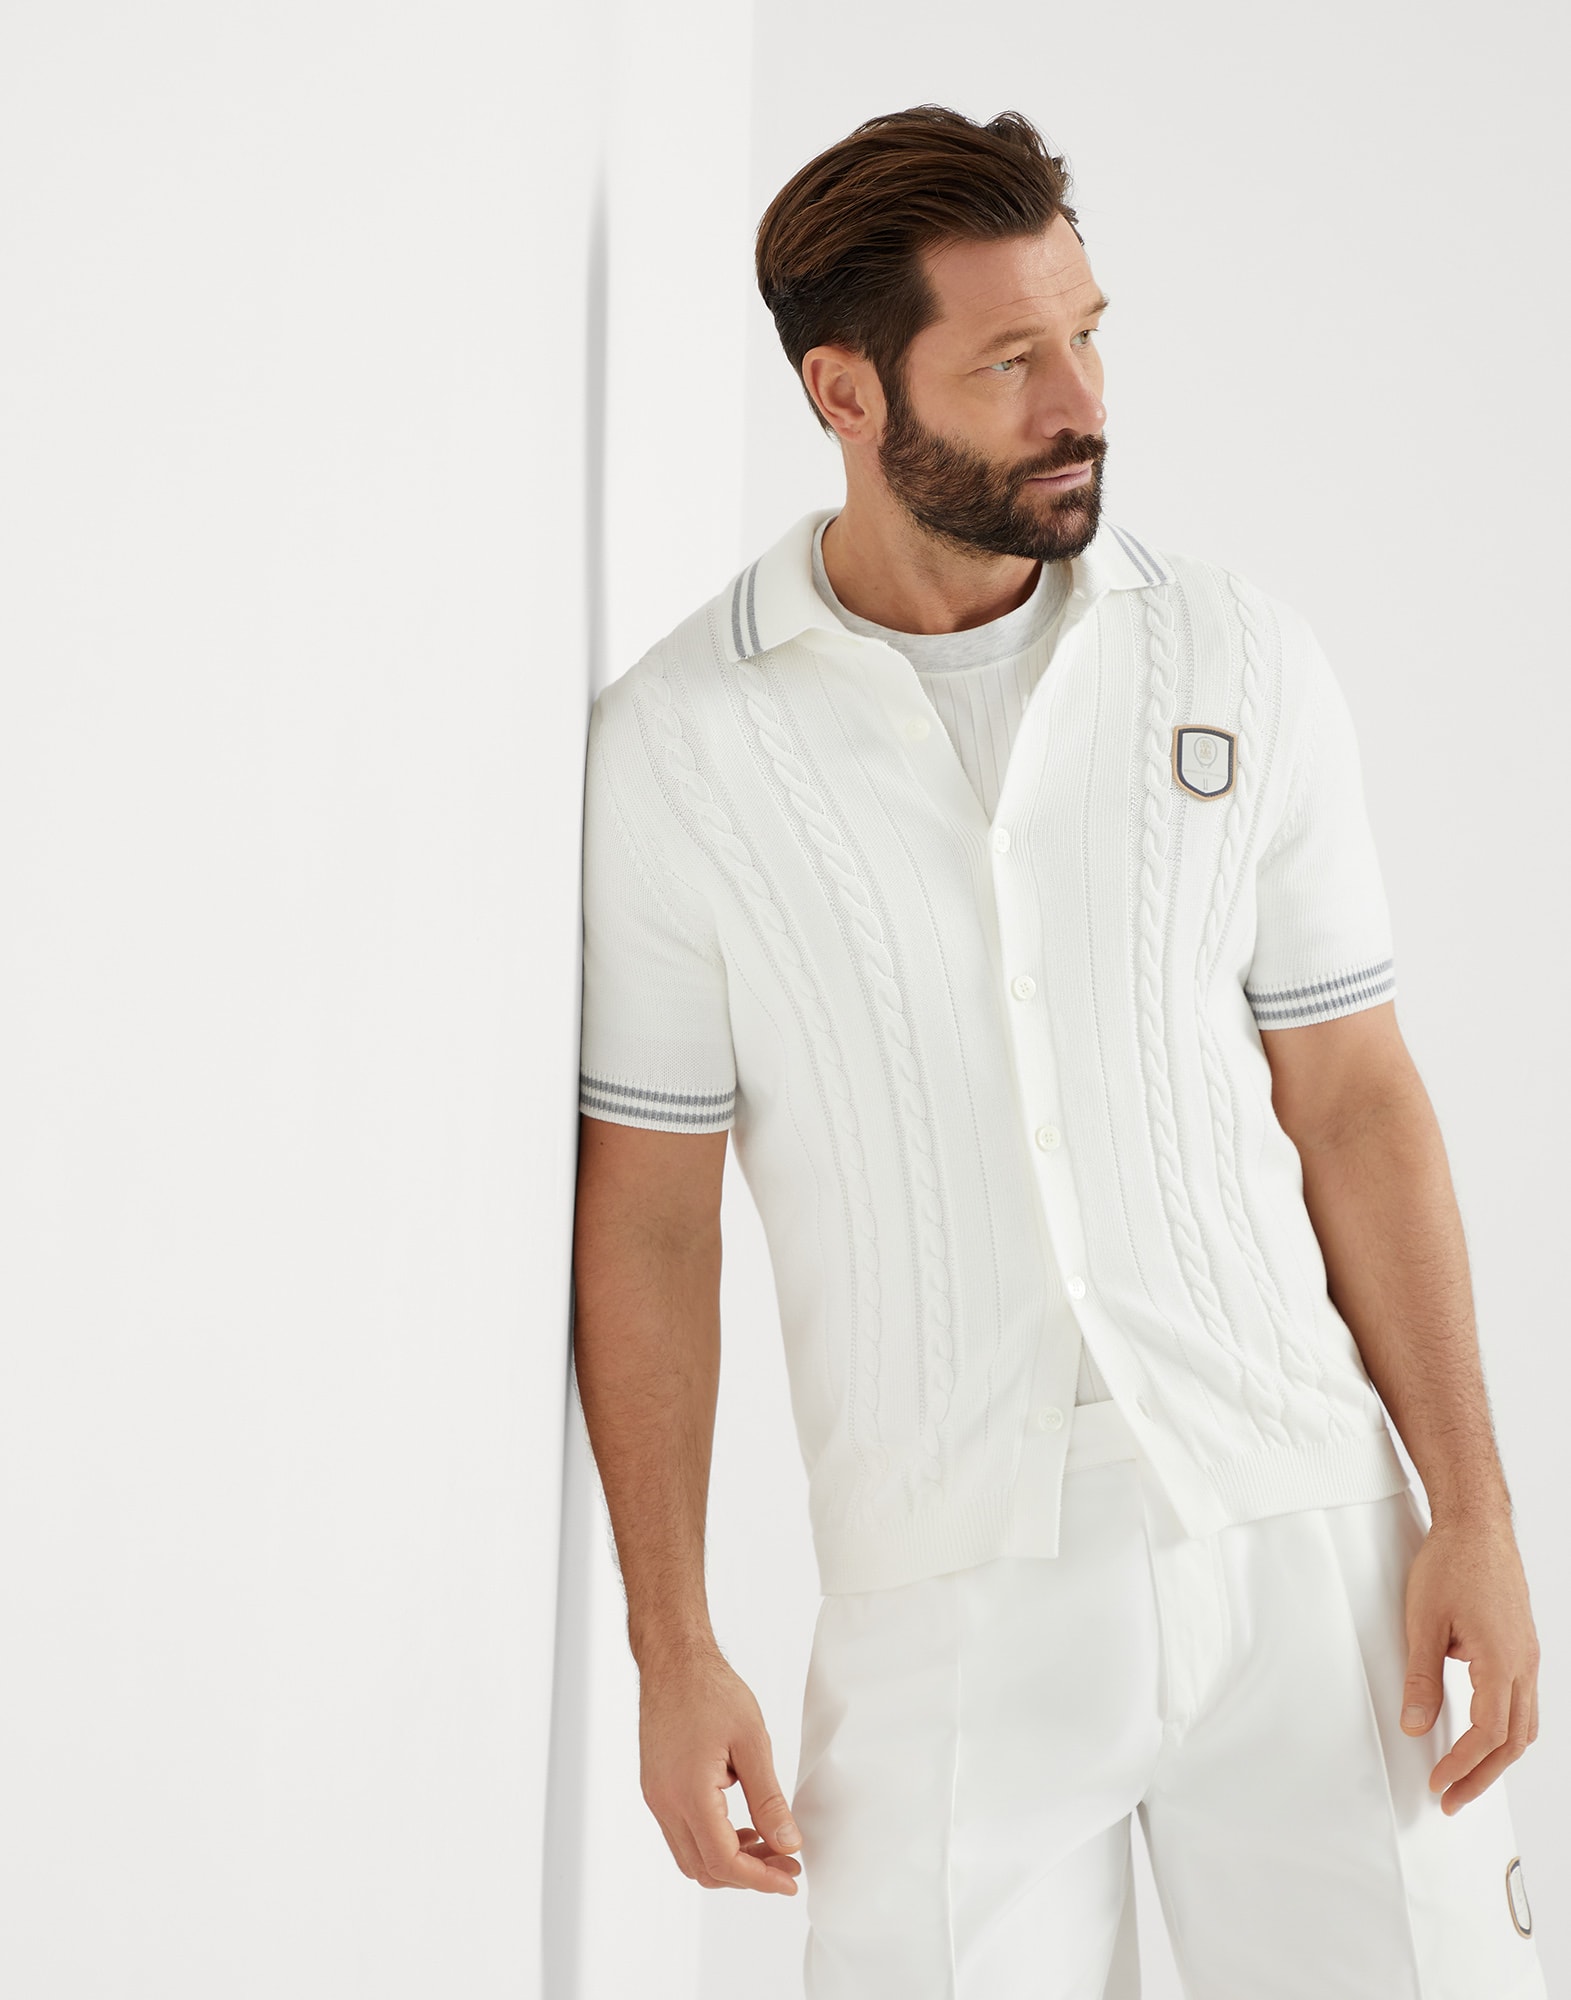 Рубашка с лейблом в теннисном стиле Панама Мужчина - Brunello Cucinelli